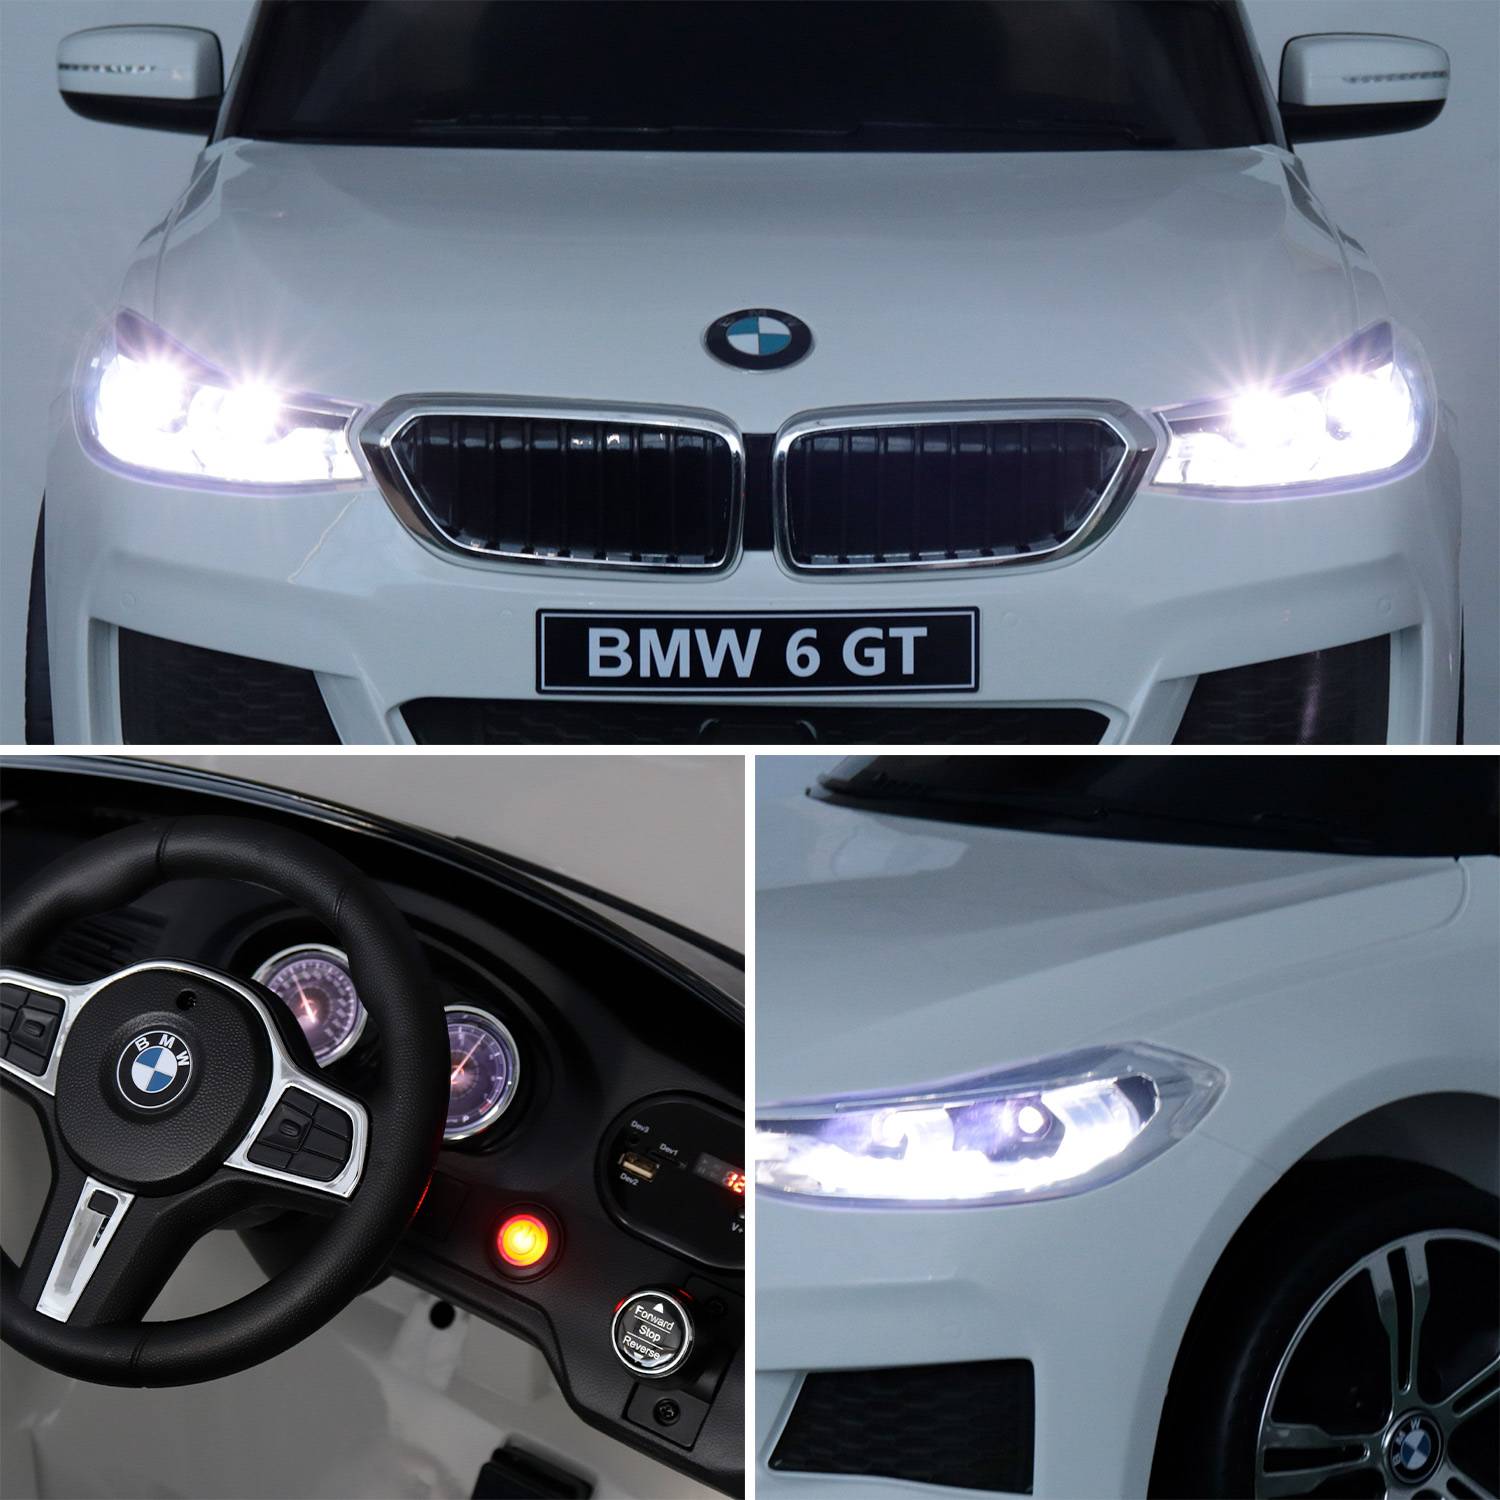 BMW GT6 Gran Turismo wit, elektrische auto 12V, 1 plaats, cabriolet voor kinderen met autoradio en afstandsbediening Photo4